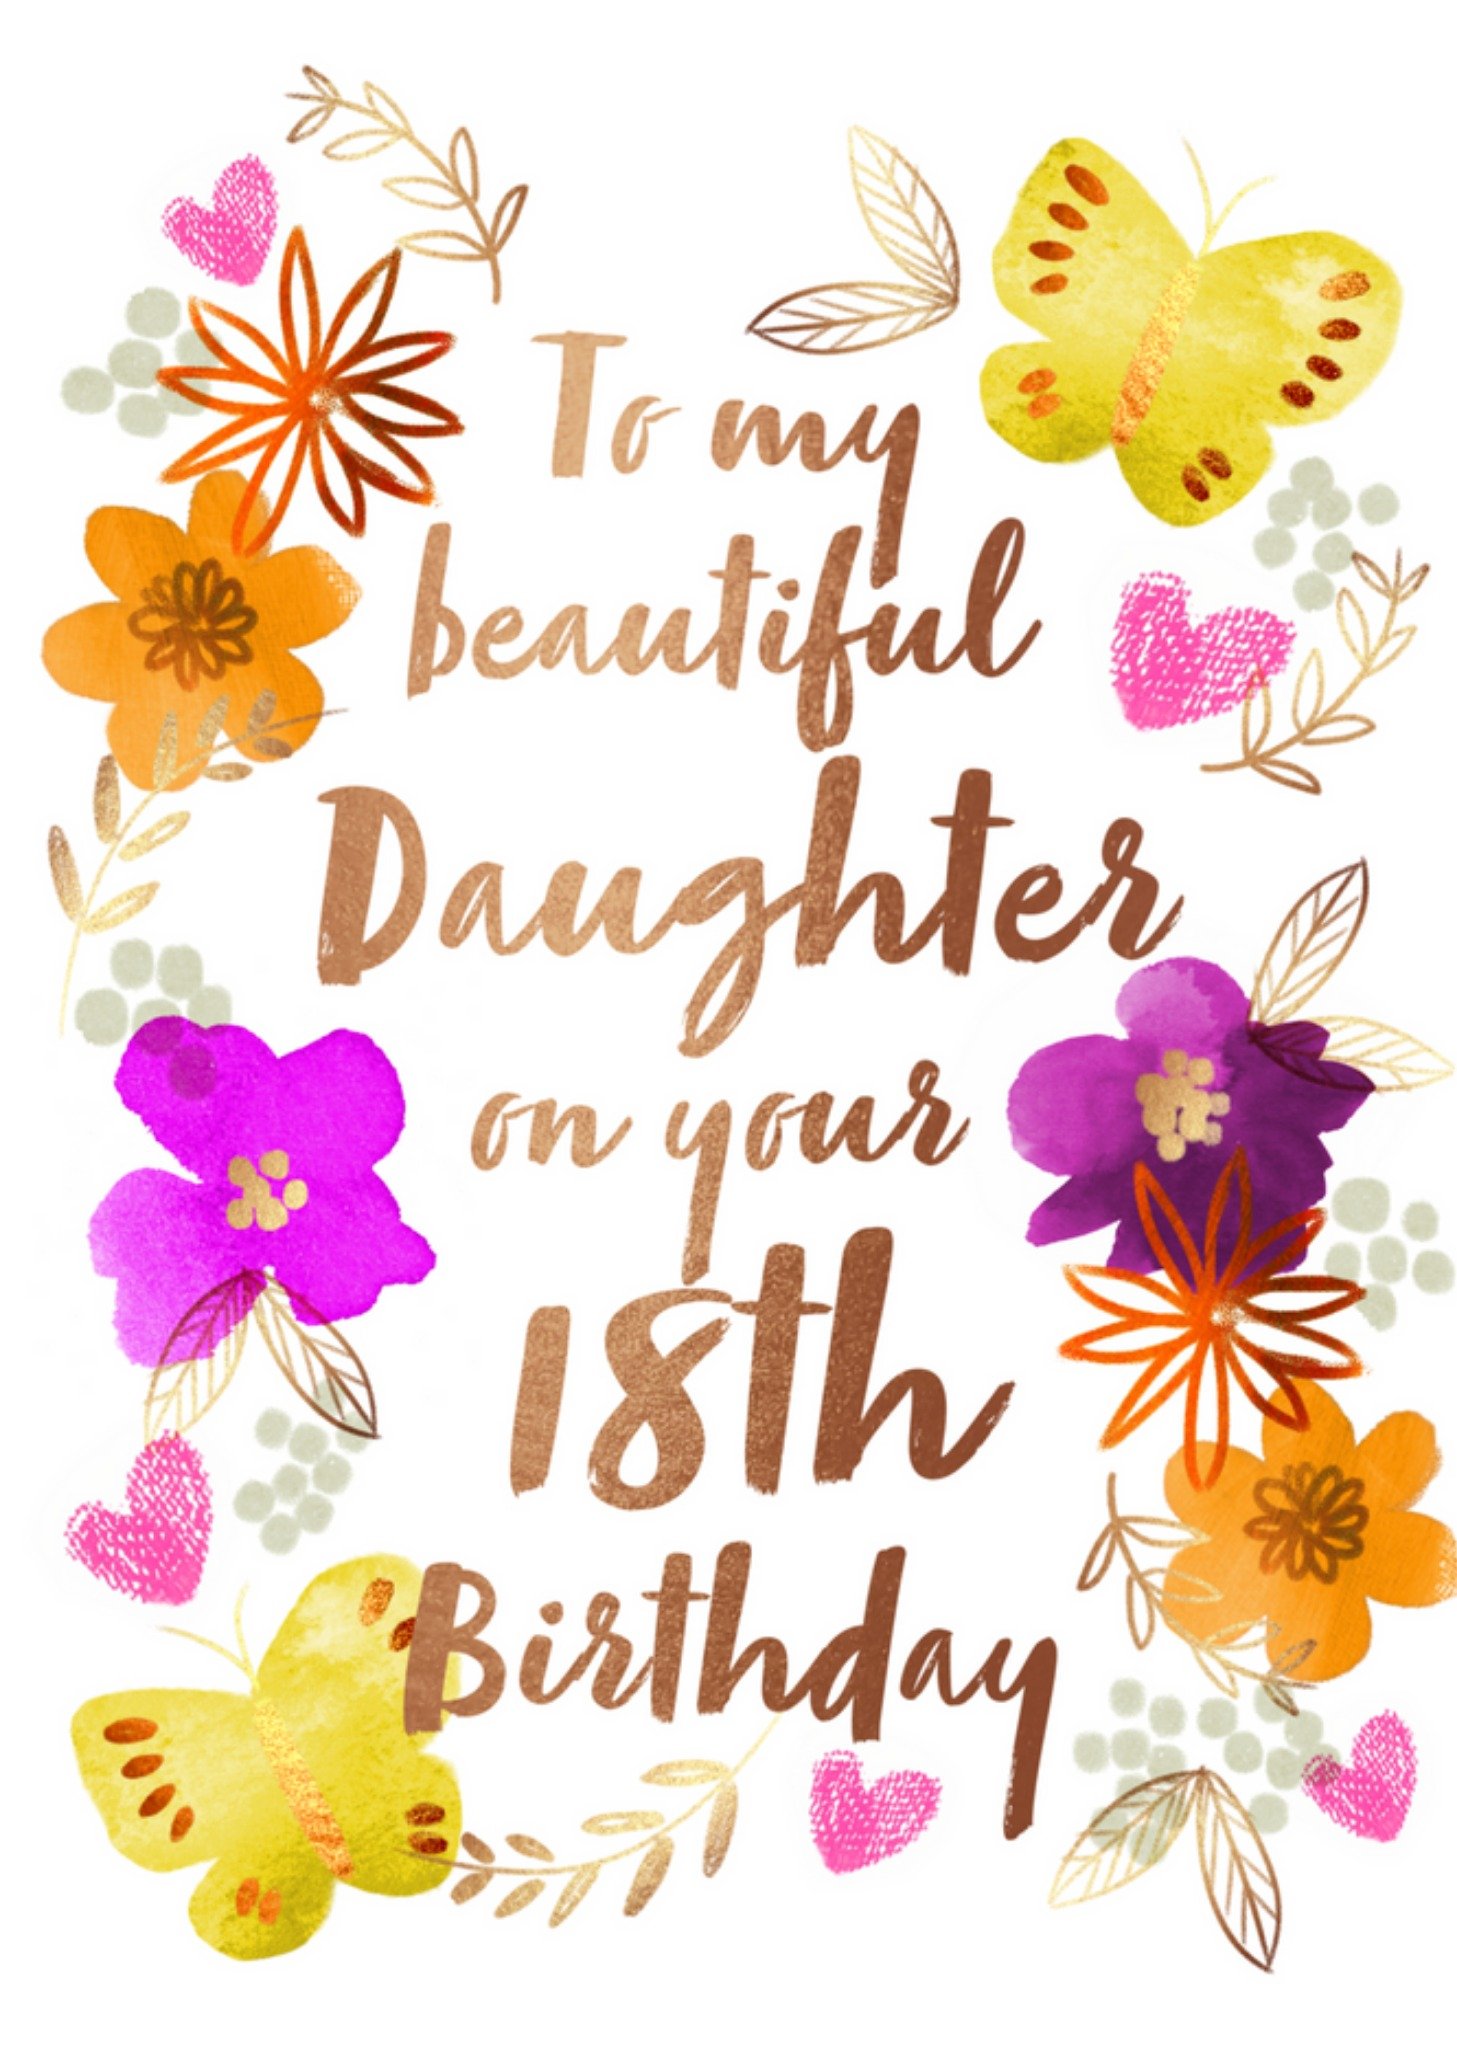 Verjaardagskaart - Beautiful daughter